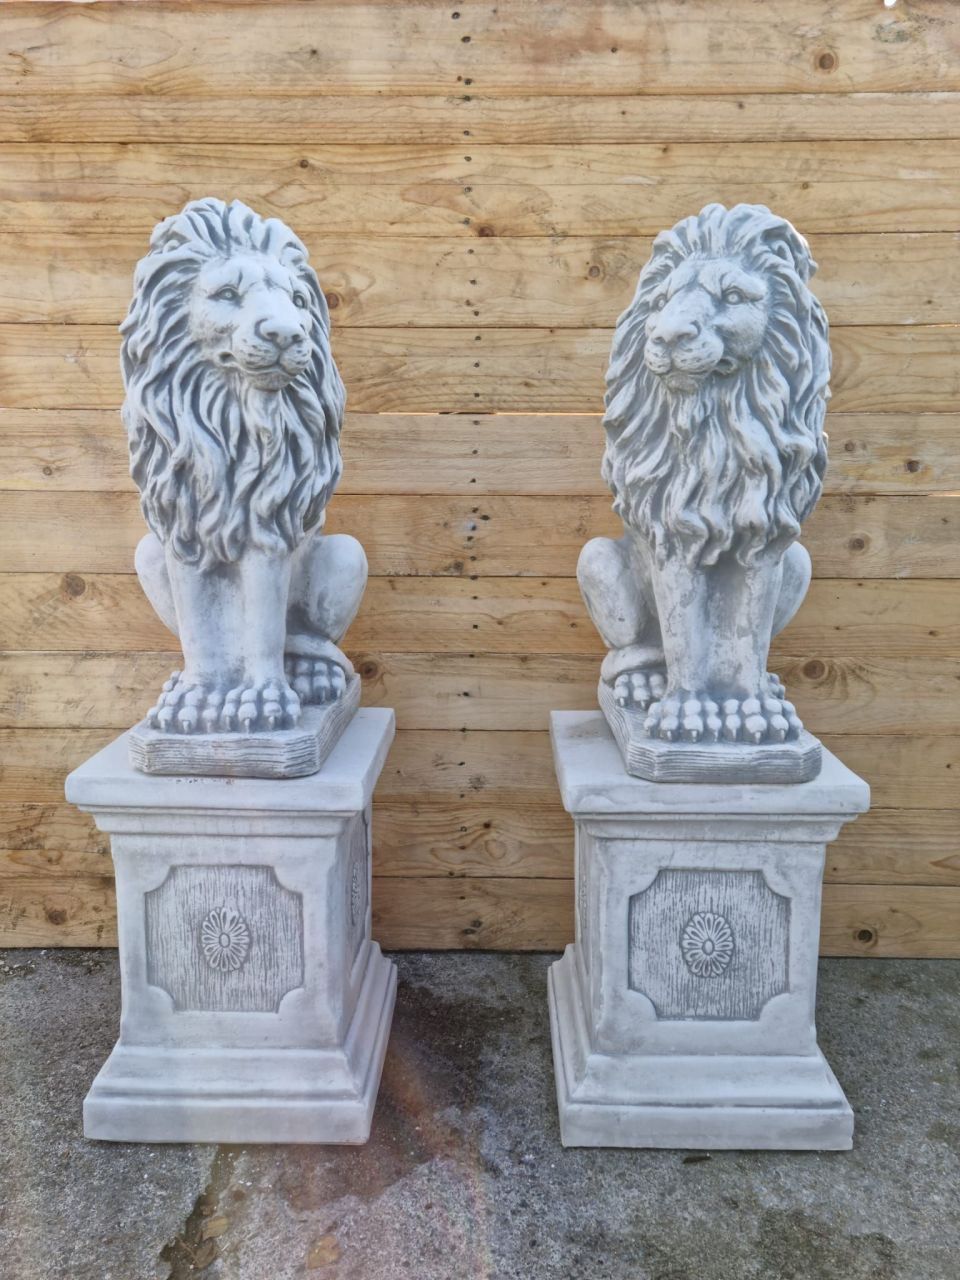 -Gartenfigur Löwen Set- seitlich- Typ 1 mit Sockel antik grau- unter Statuen/Skulpturen Tiere Löwen